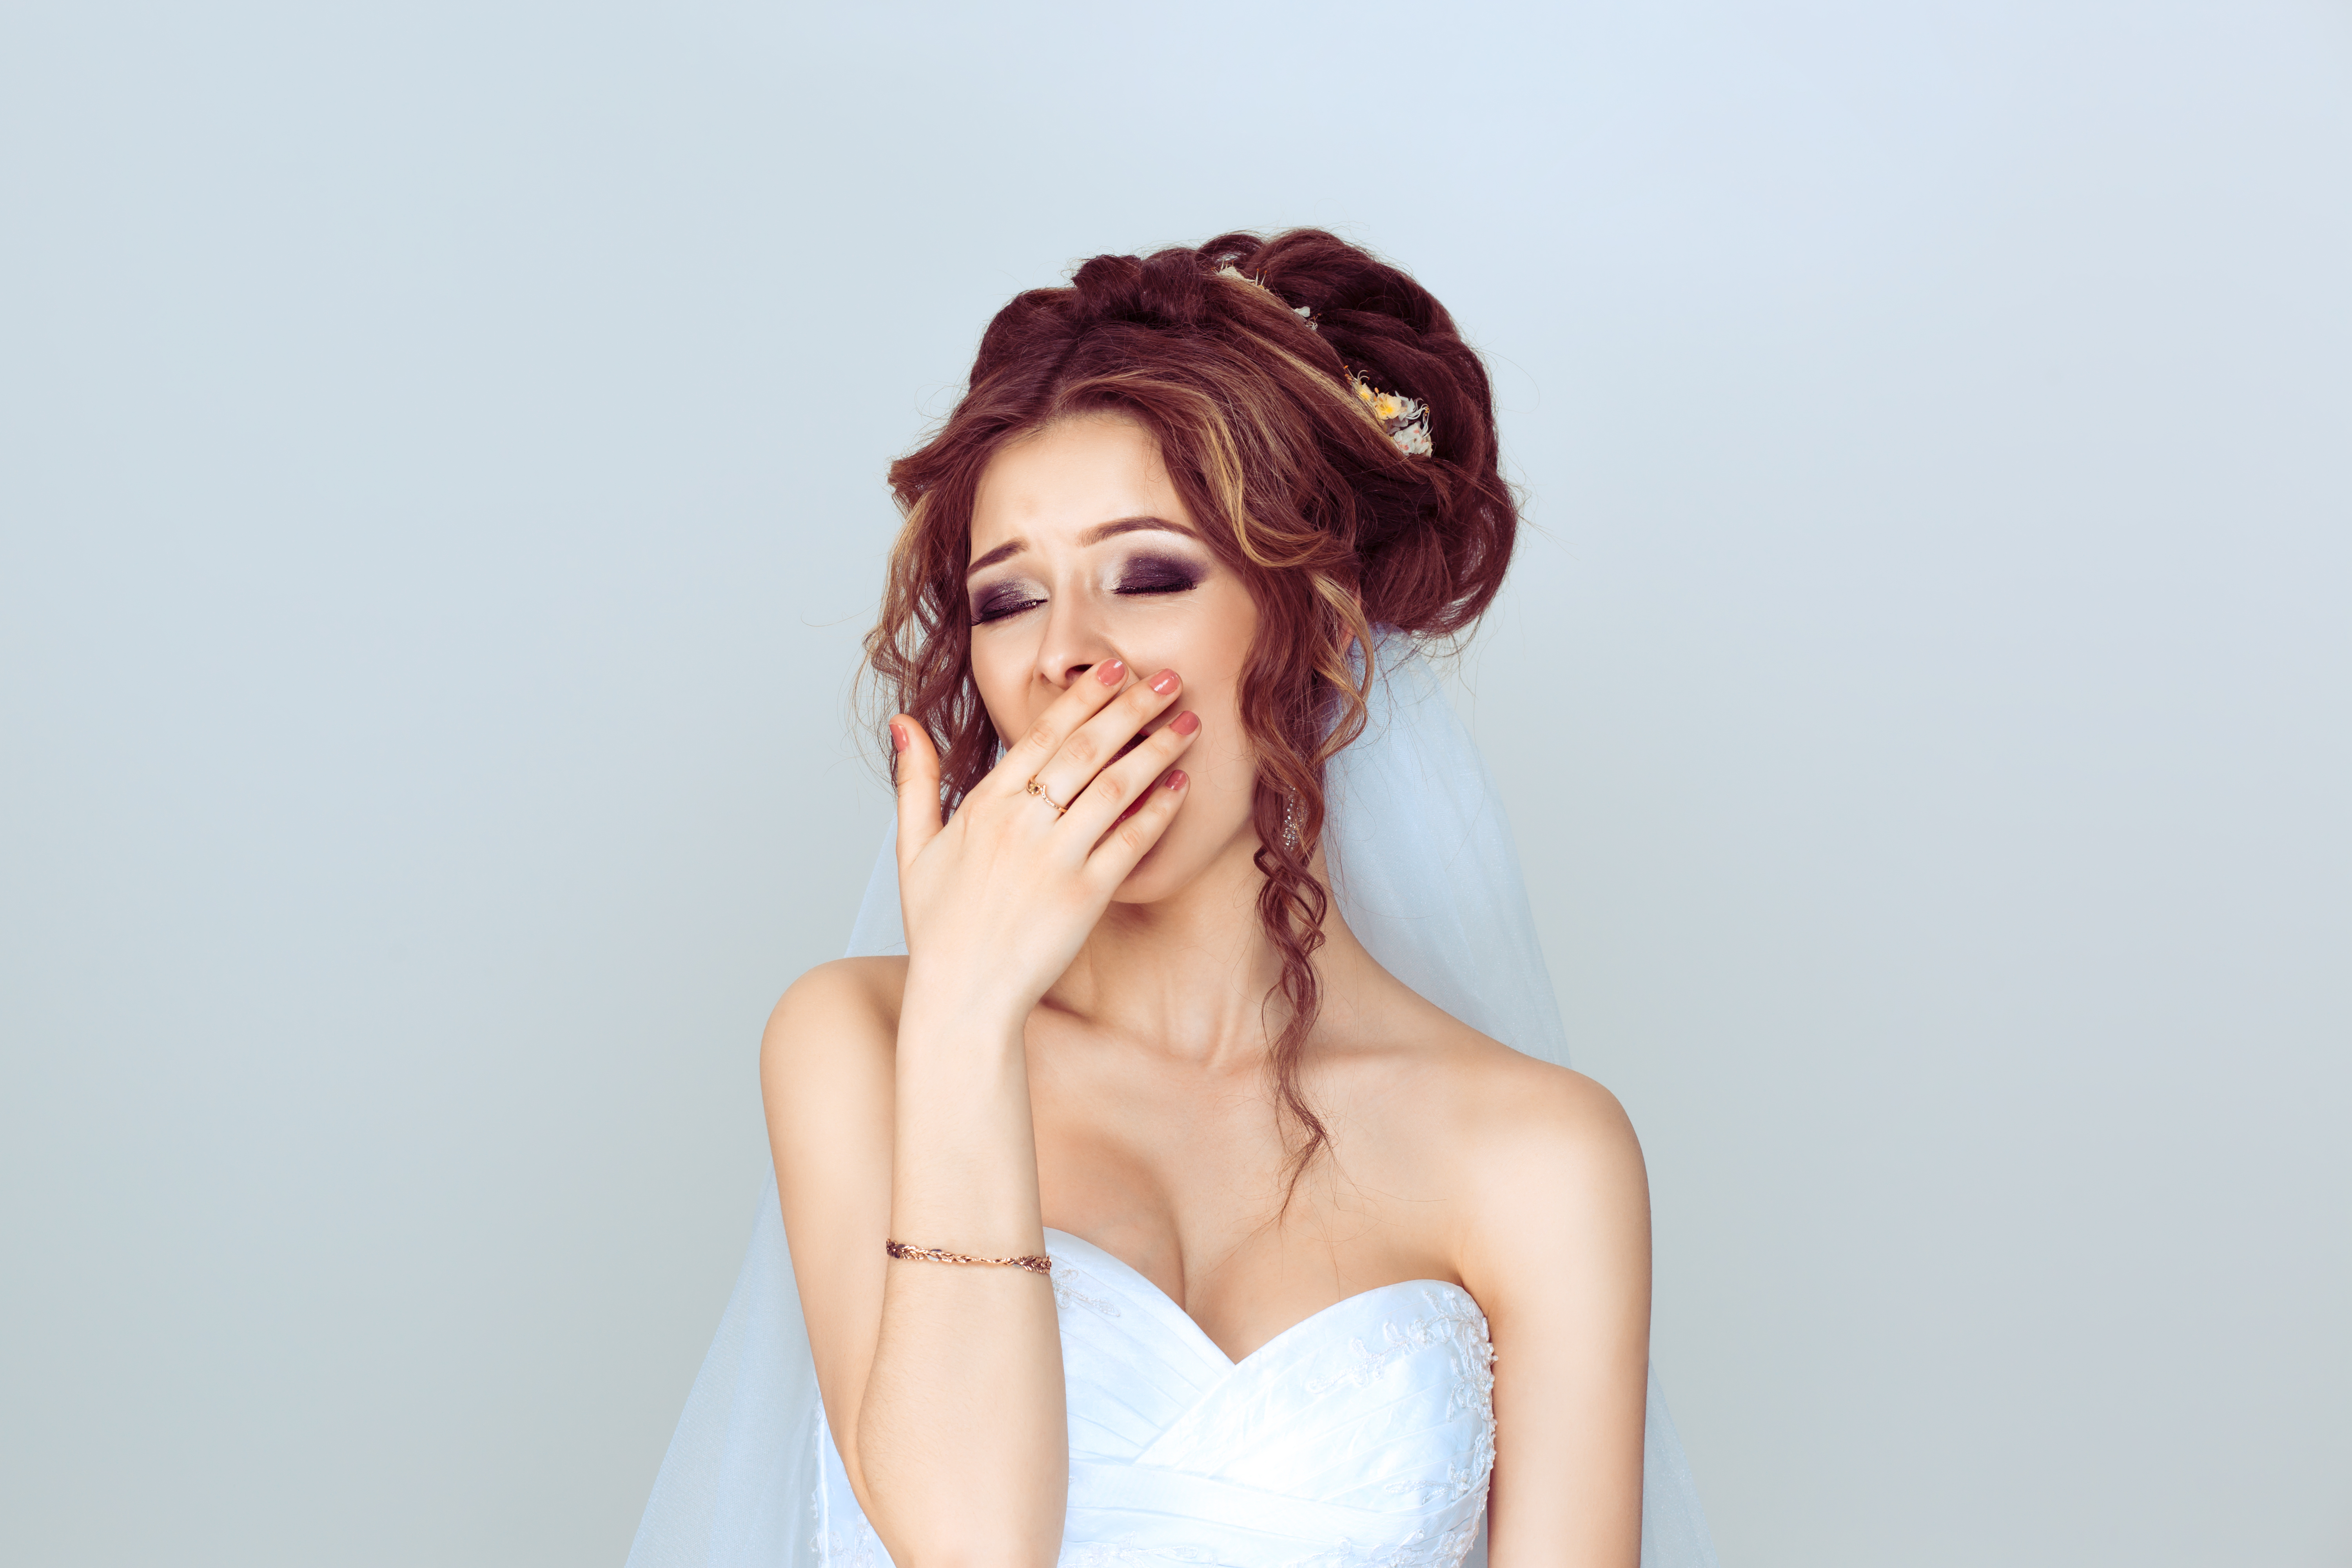 Una novia se tapa la boca al bostezar | Fuente: Shutterstock